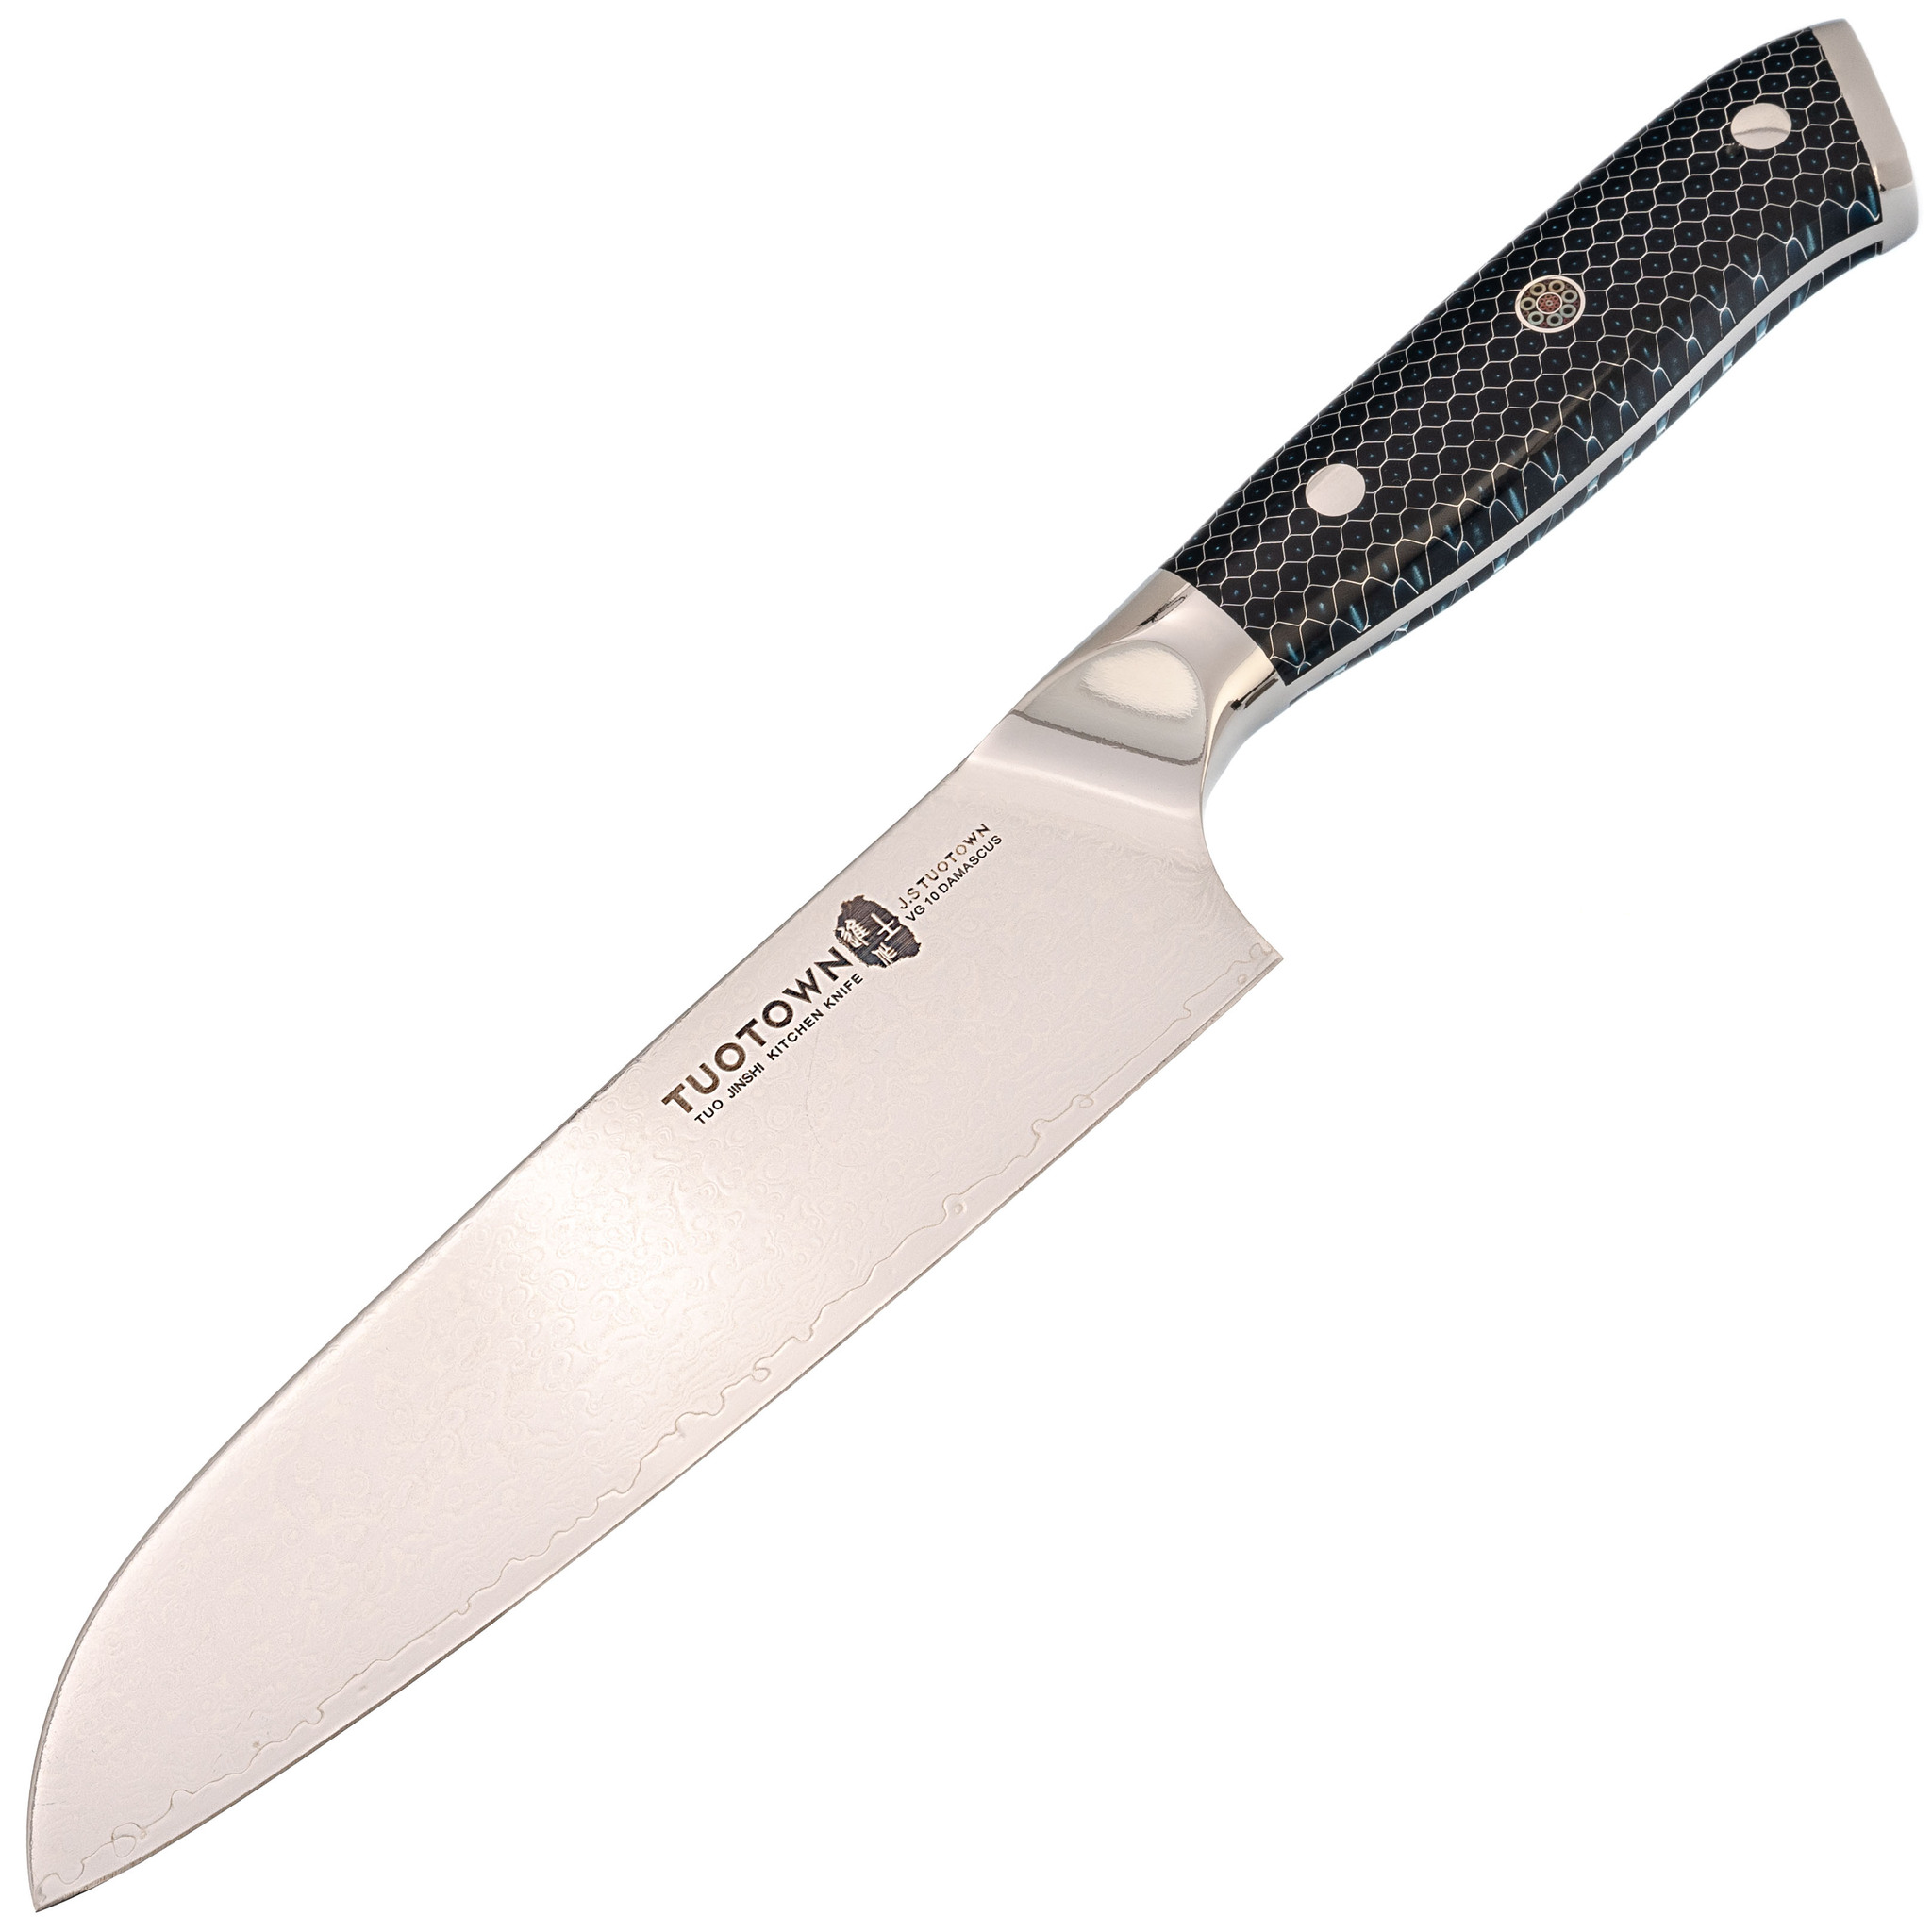 Кухонный нож Сантоку Tuotown, сталь VG10, обкладка Damascus, рукоять акрил, синий